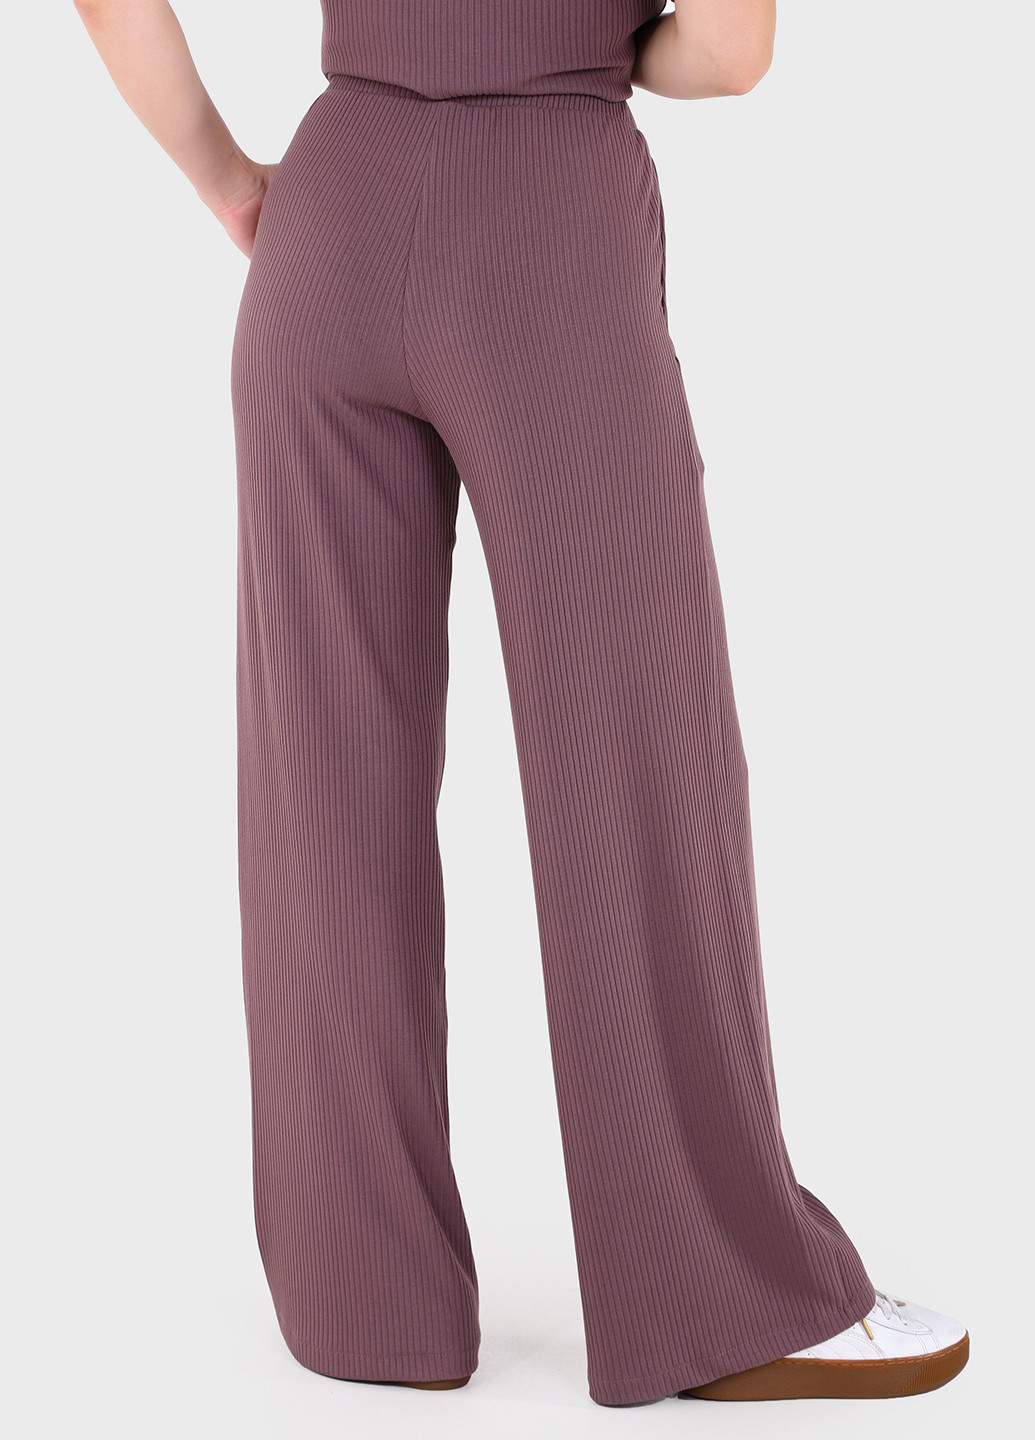 Женские брюки клеш в рубчик фиолетового цвета 600000070 Merlini амаранти (257533392)